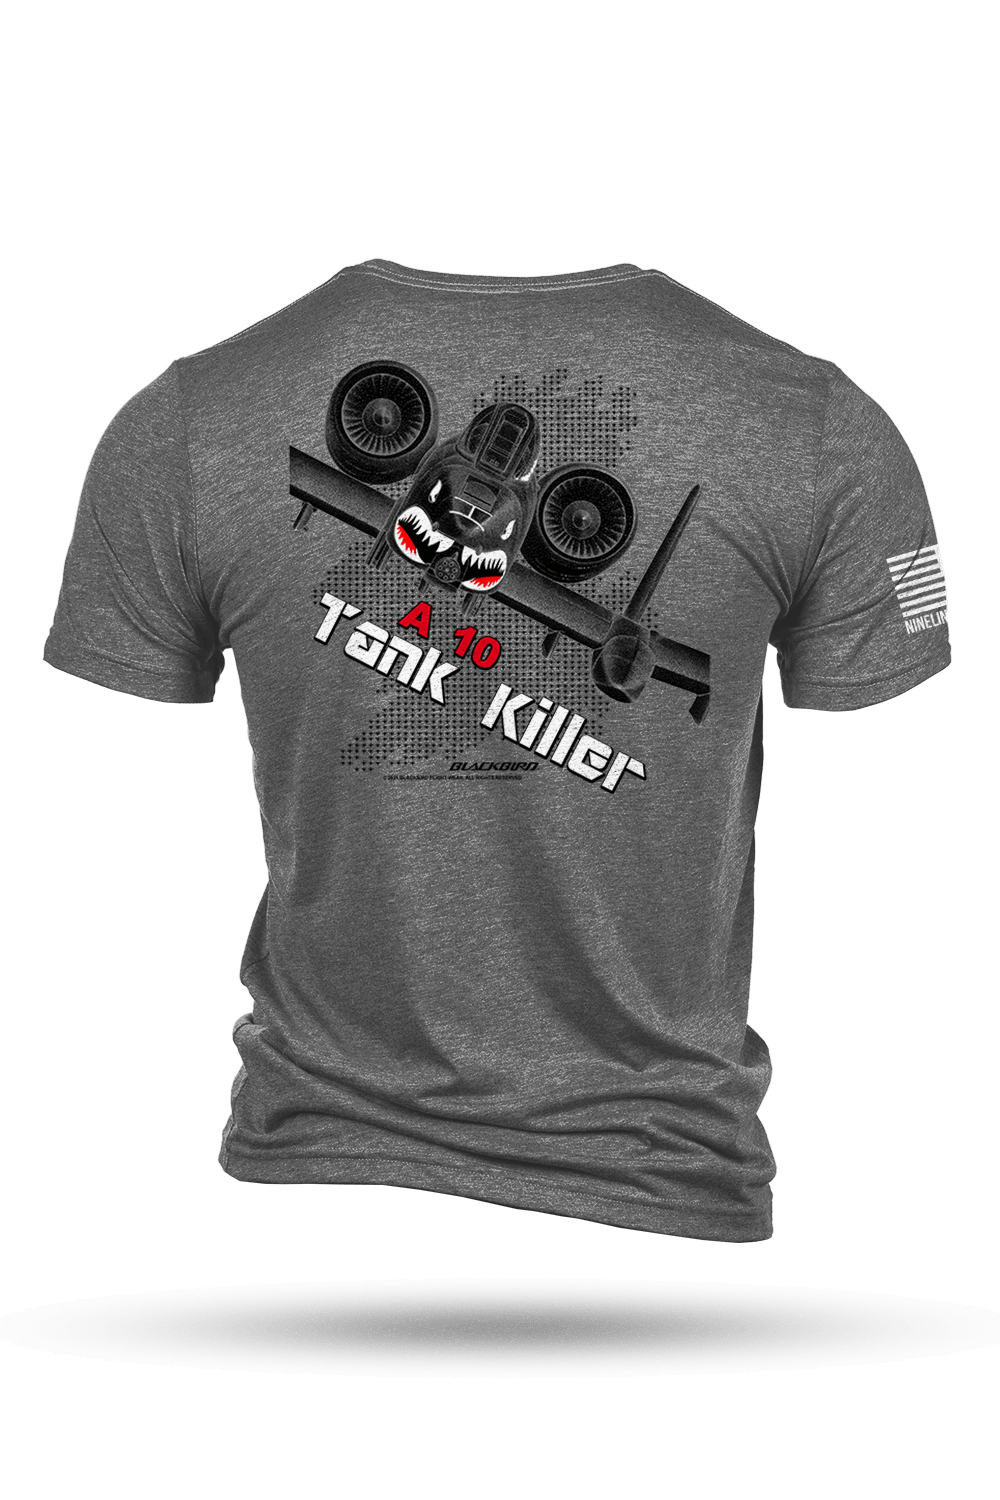 T - Shirt - Blackbird - A 10 Tank Killer #3